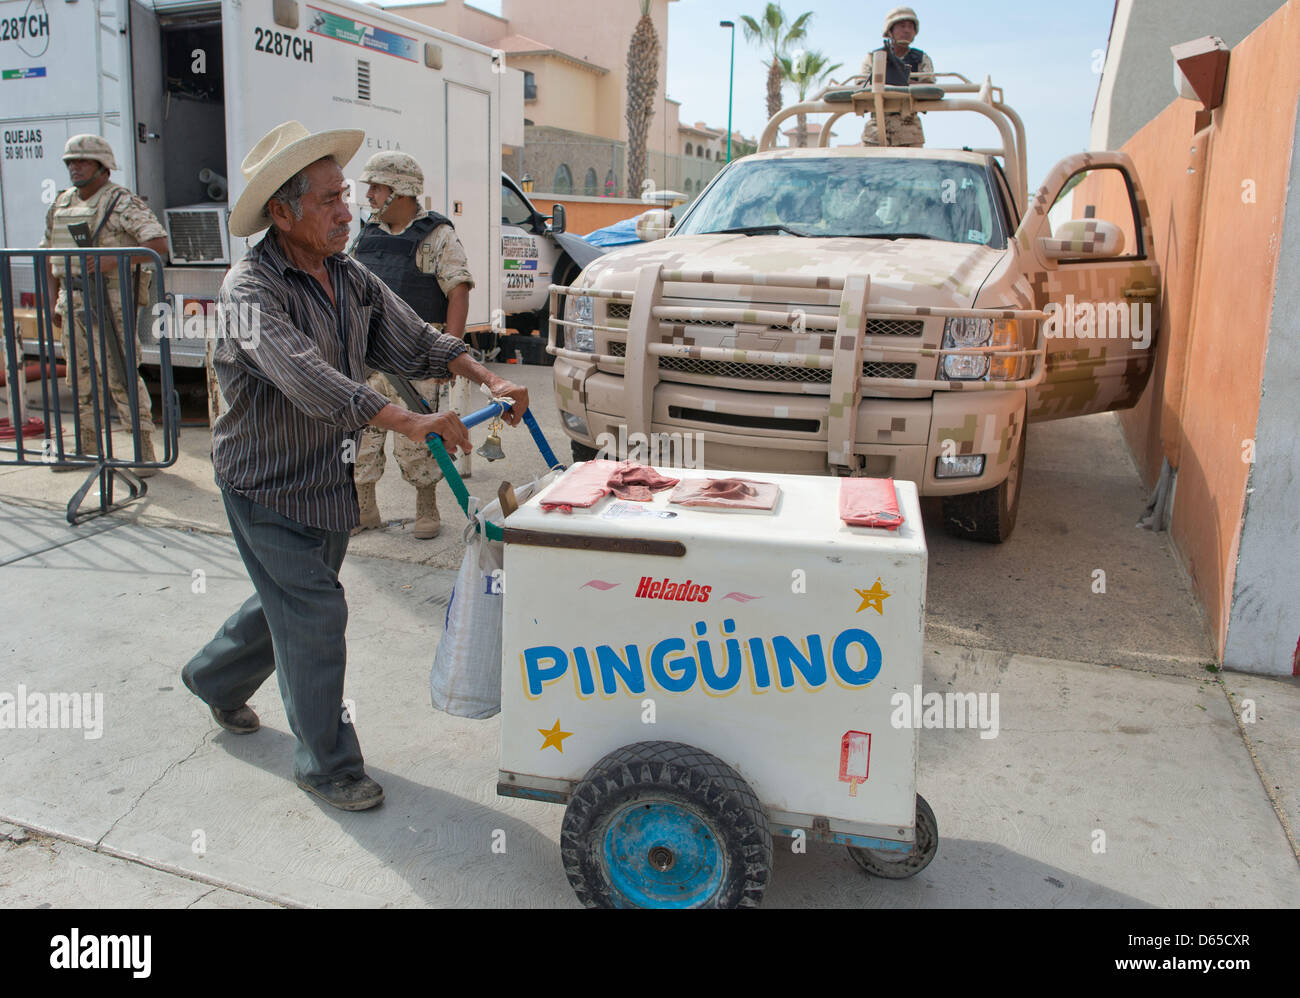 Ein Eisverkäufer schiebt am Sonntag (17.06.2012) a Los Cabos, Mexiko, seinen Eiswagen un bewaffneten Soldaten vorbei. Am 18. und 19.06.2012 findet in dem exklusiven Badeort am Pazifik der diesjährige G20-Gipfel statt. Foto: Peer Grimm dpa Foto Stock